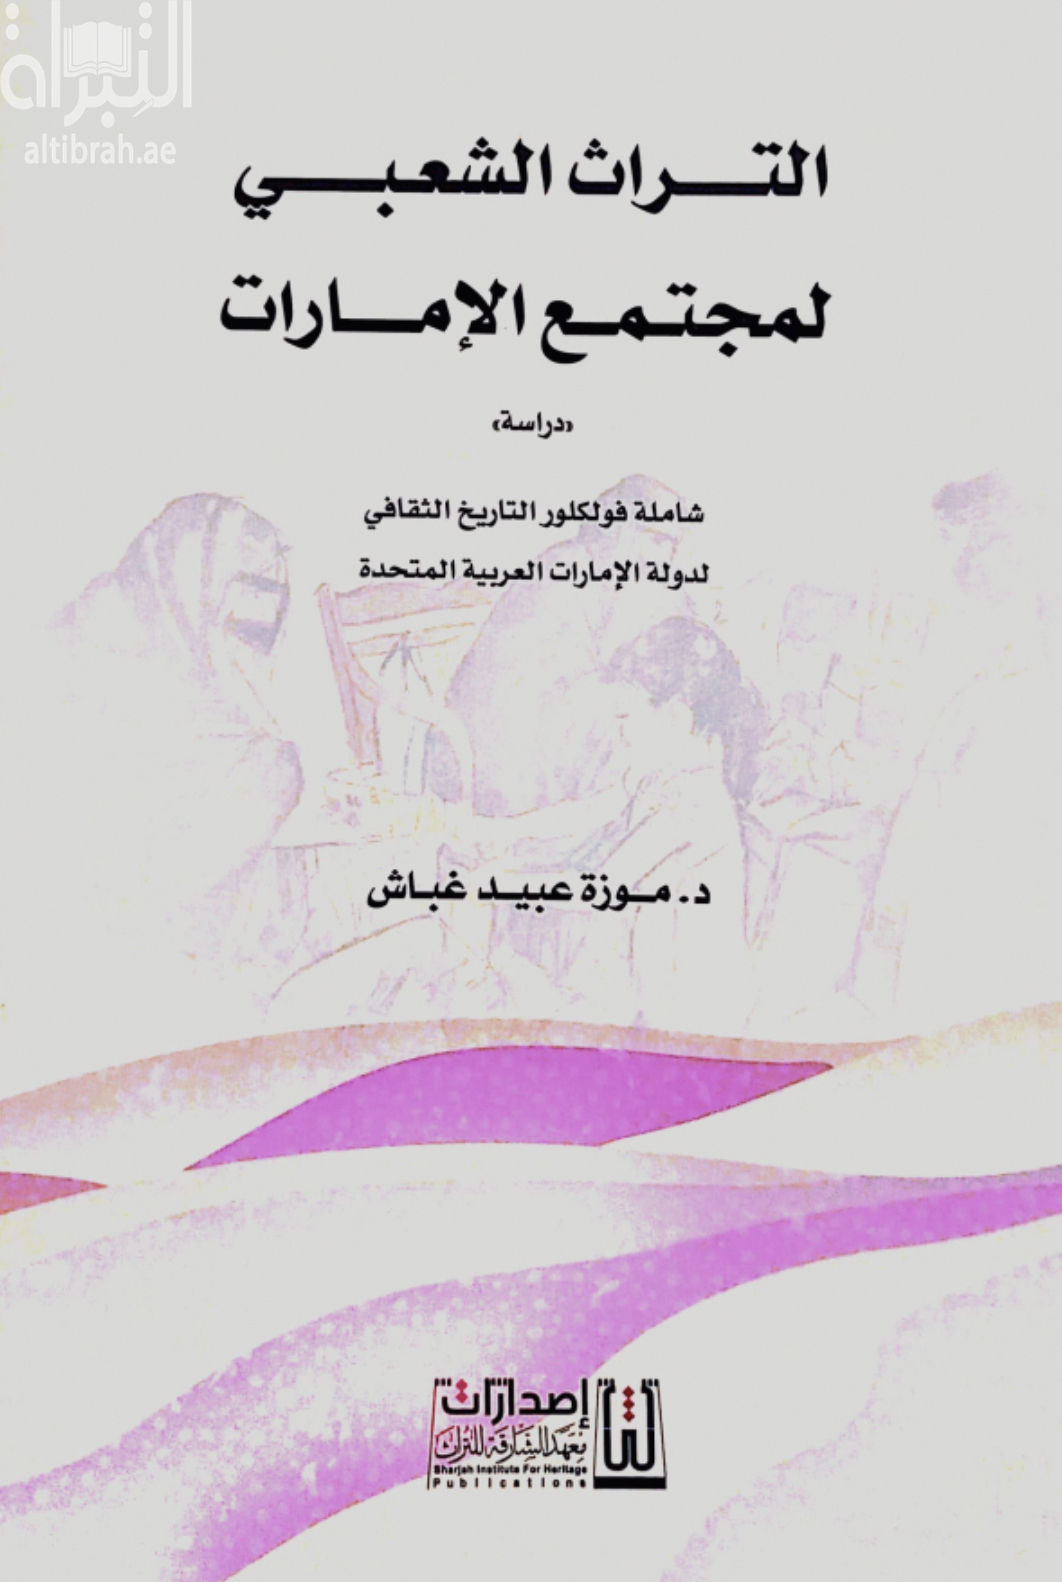 التراث الشعبي لمجتمع الإمارات - دراسة - شاملة فولكلور التاريخ الثقافي لدولة الإمارات العربية المتحدة